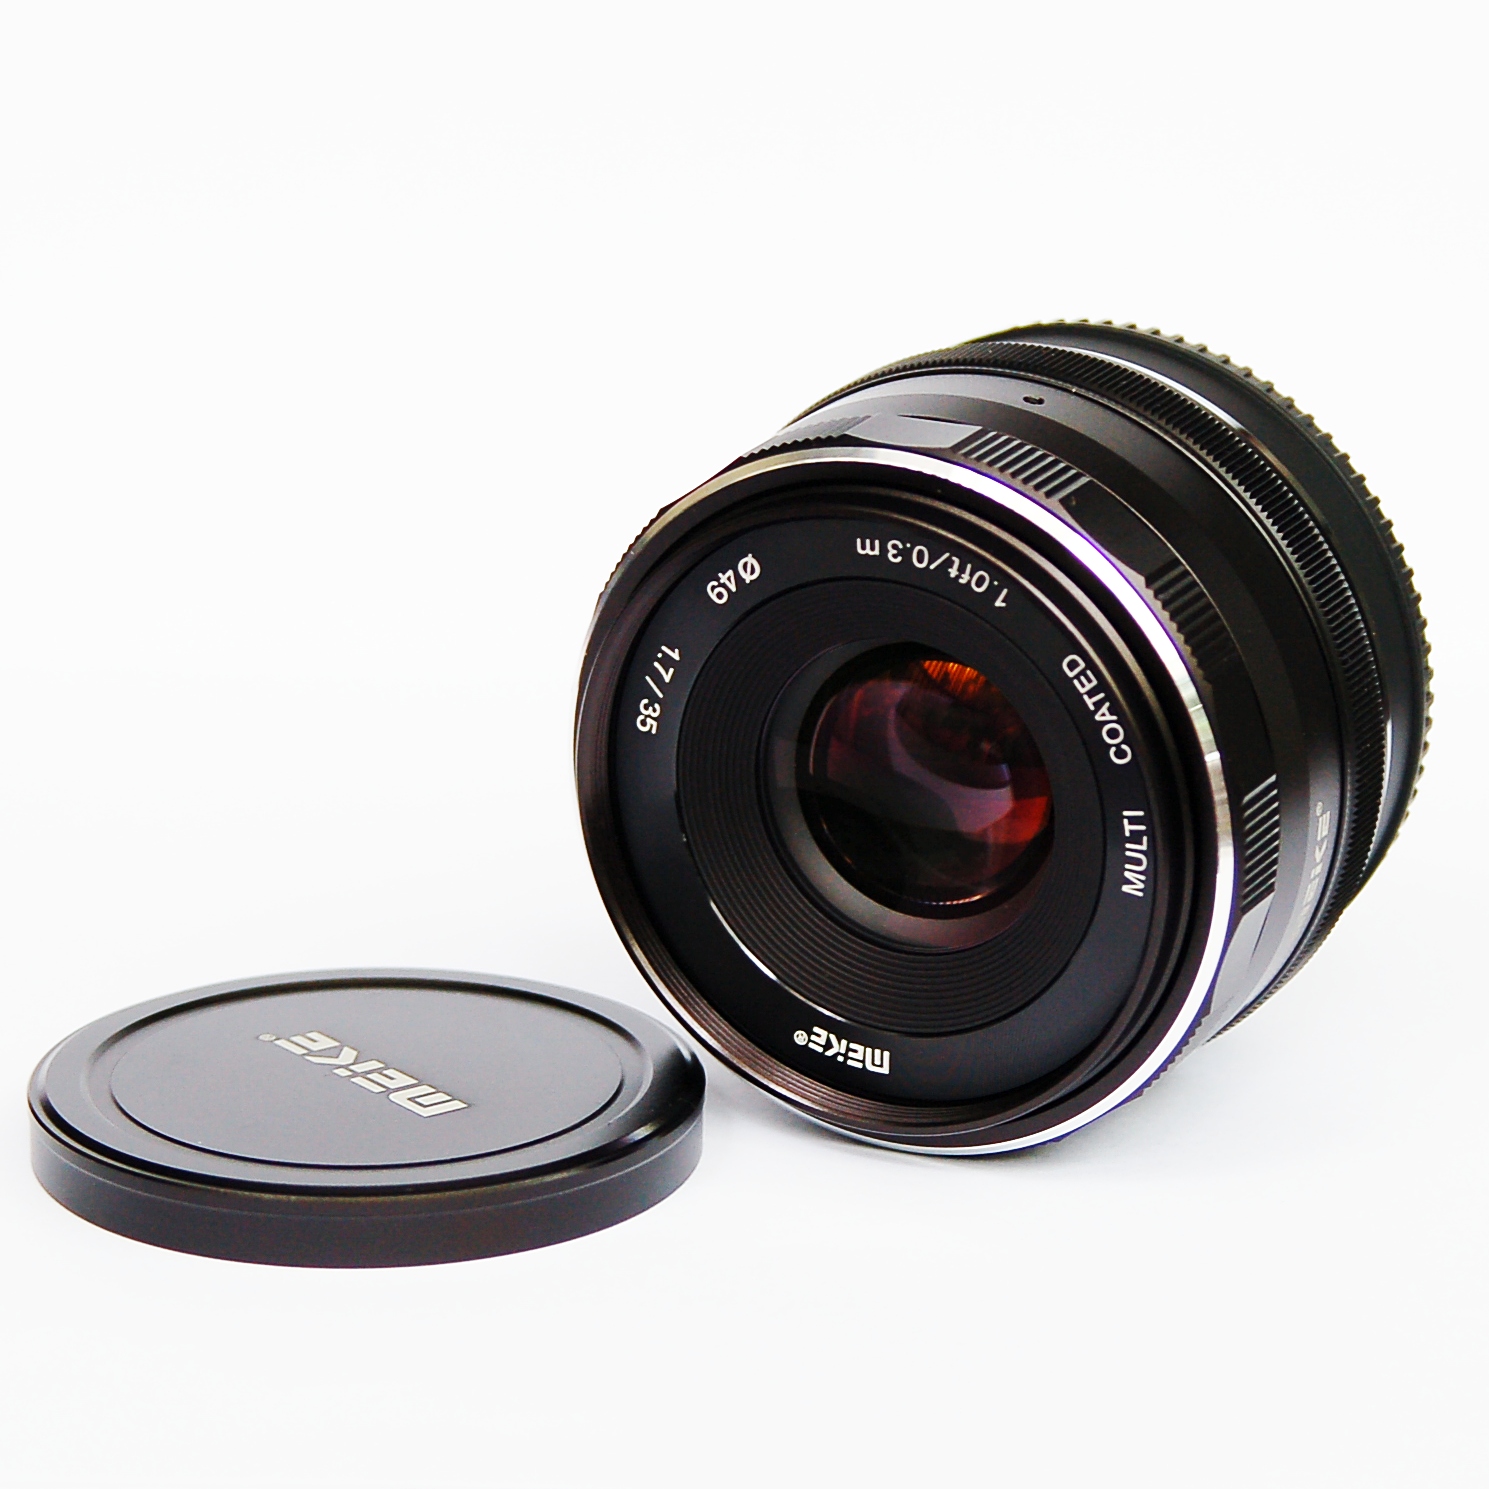 Ống kính Meike 35mm F1.7 cho máy ảnh Fuji manual focus- Hàng nhập khẩu